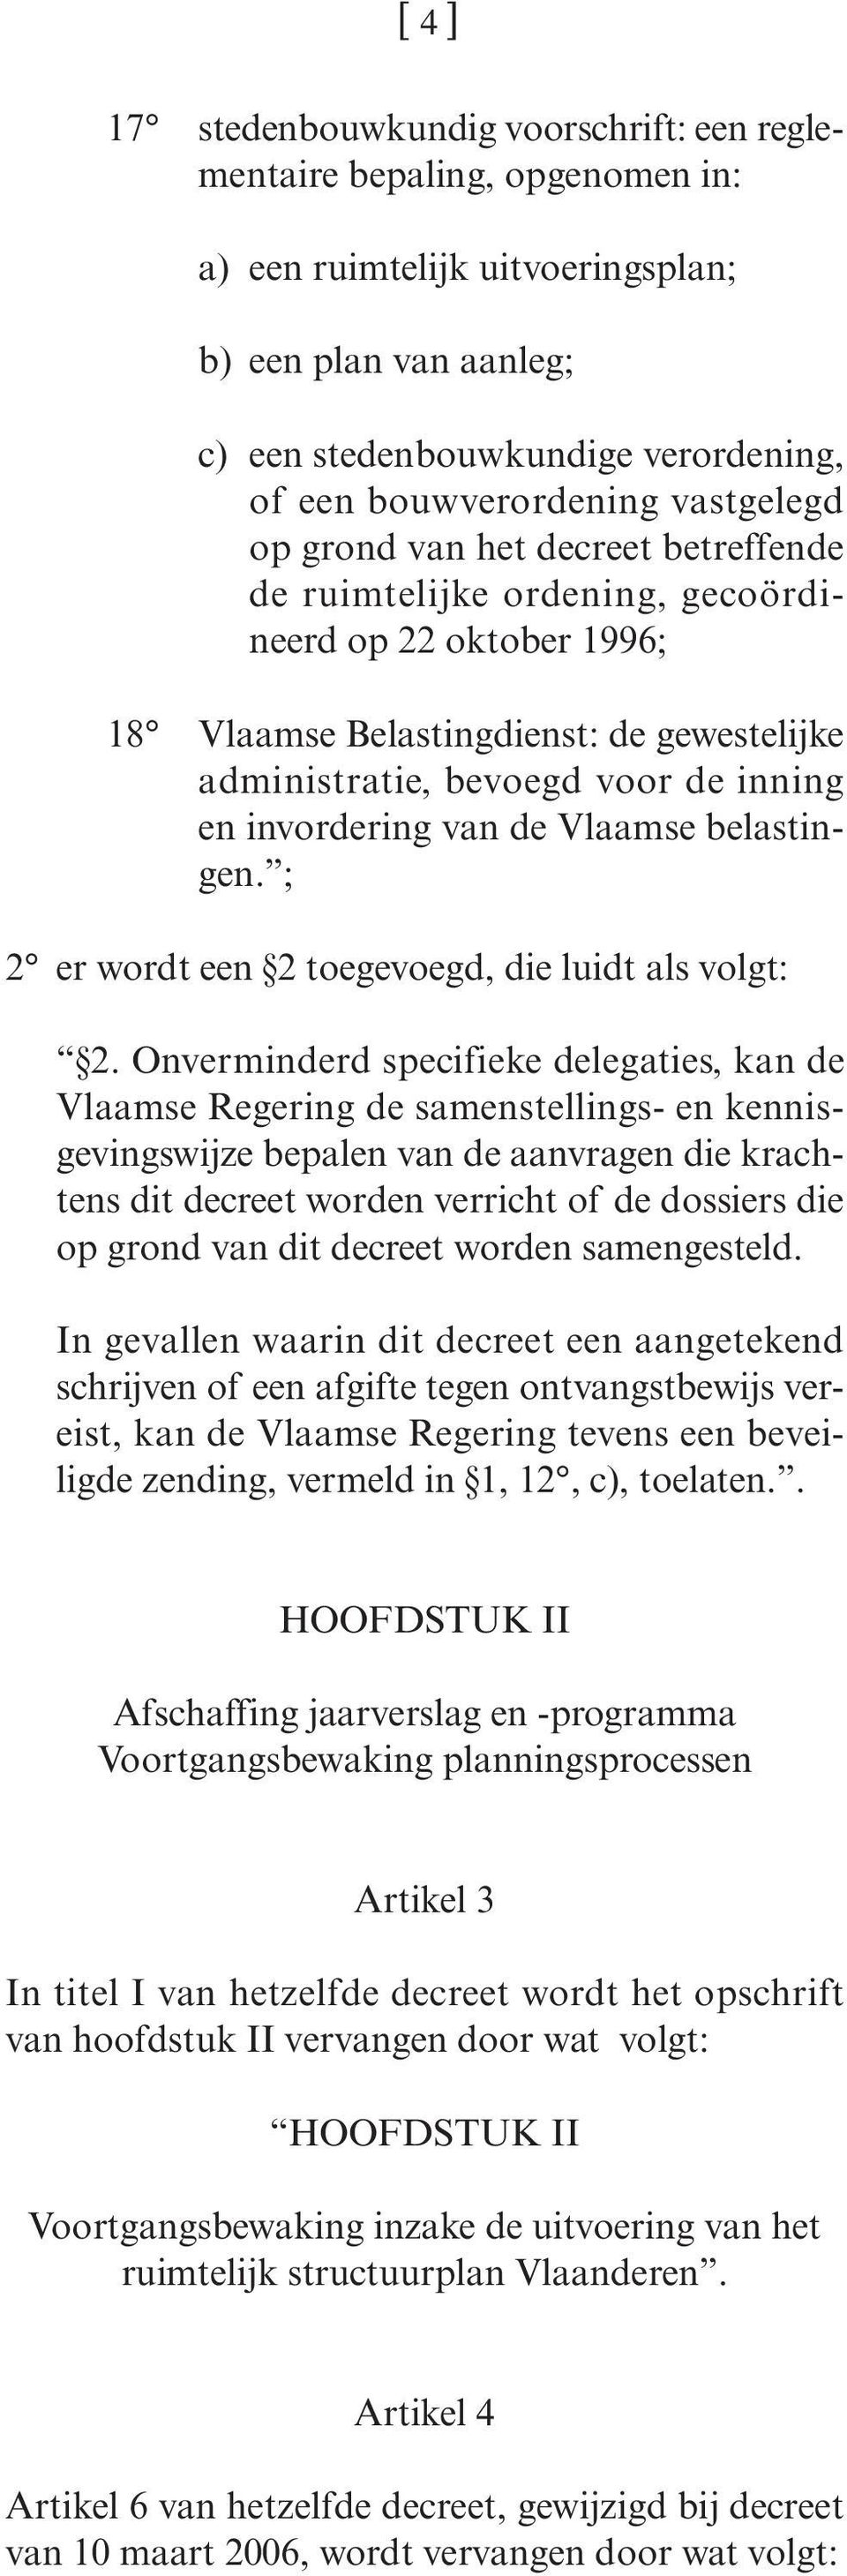 inning en invordering van de Vlaamse belastingen. ; 2 er wordt een 2 toegevoegd, die luidt als volgt: 2.